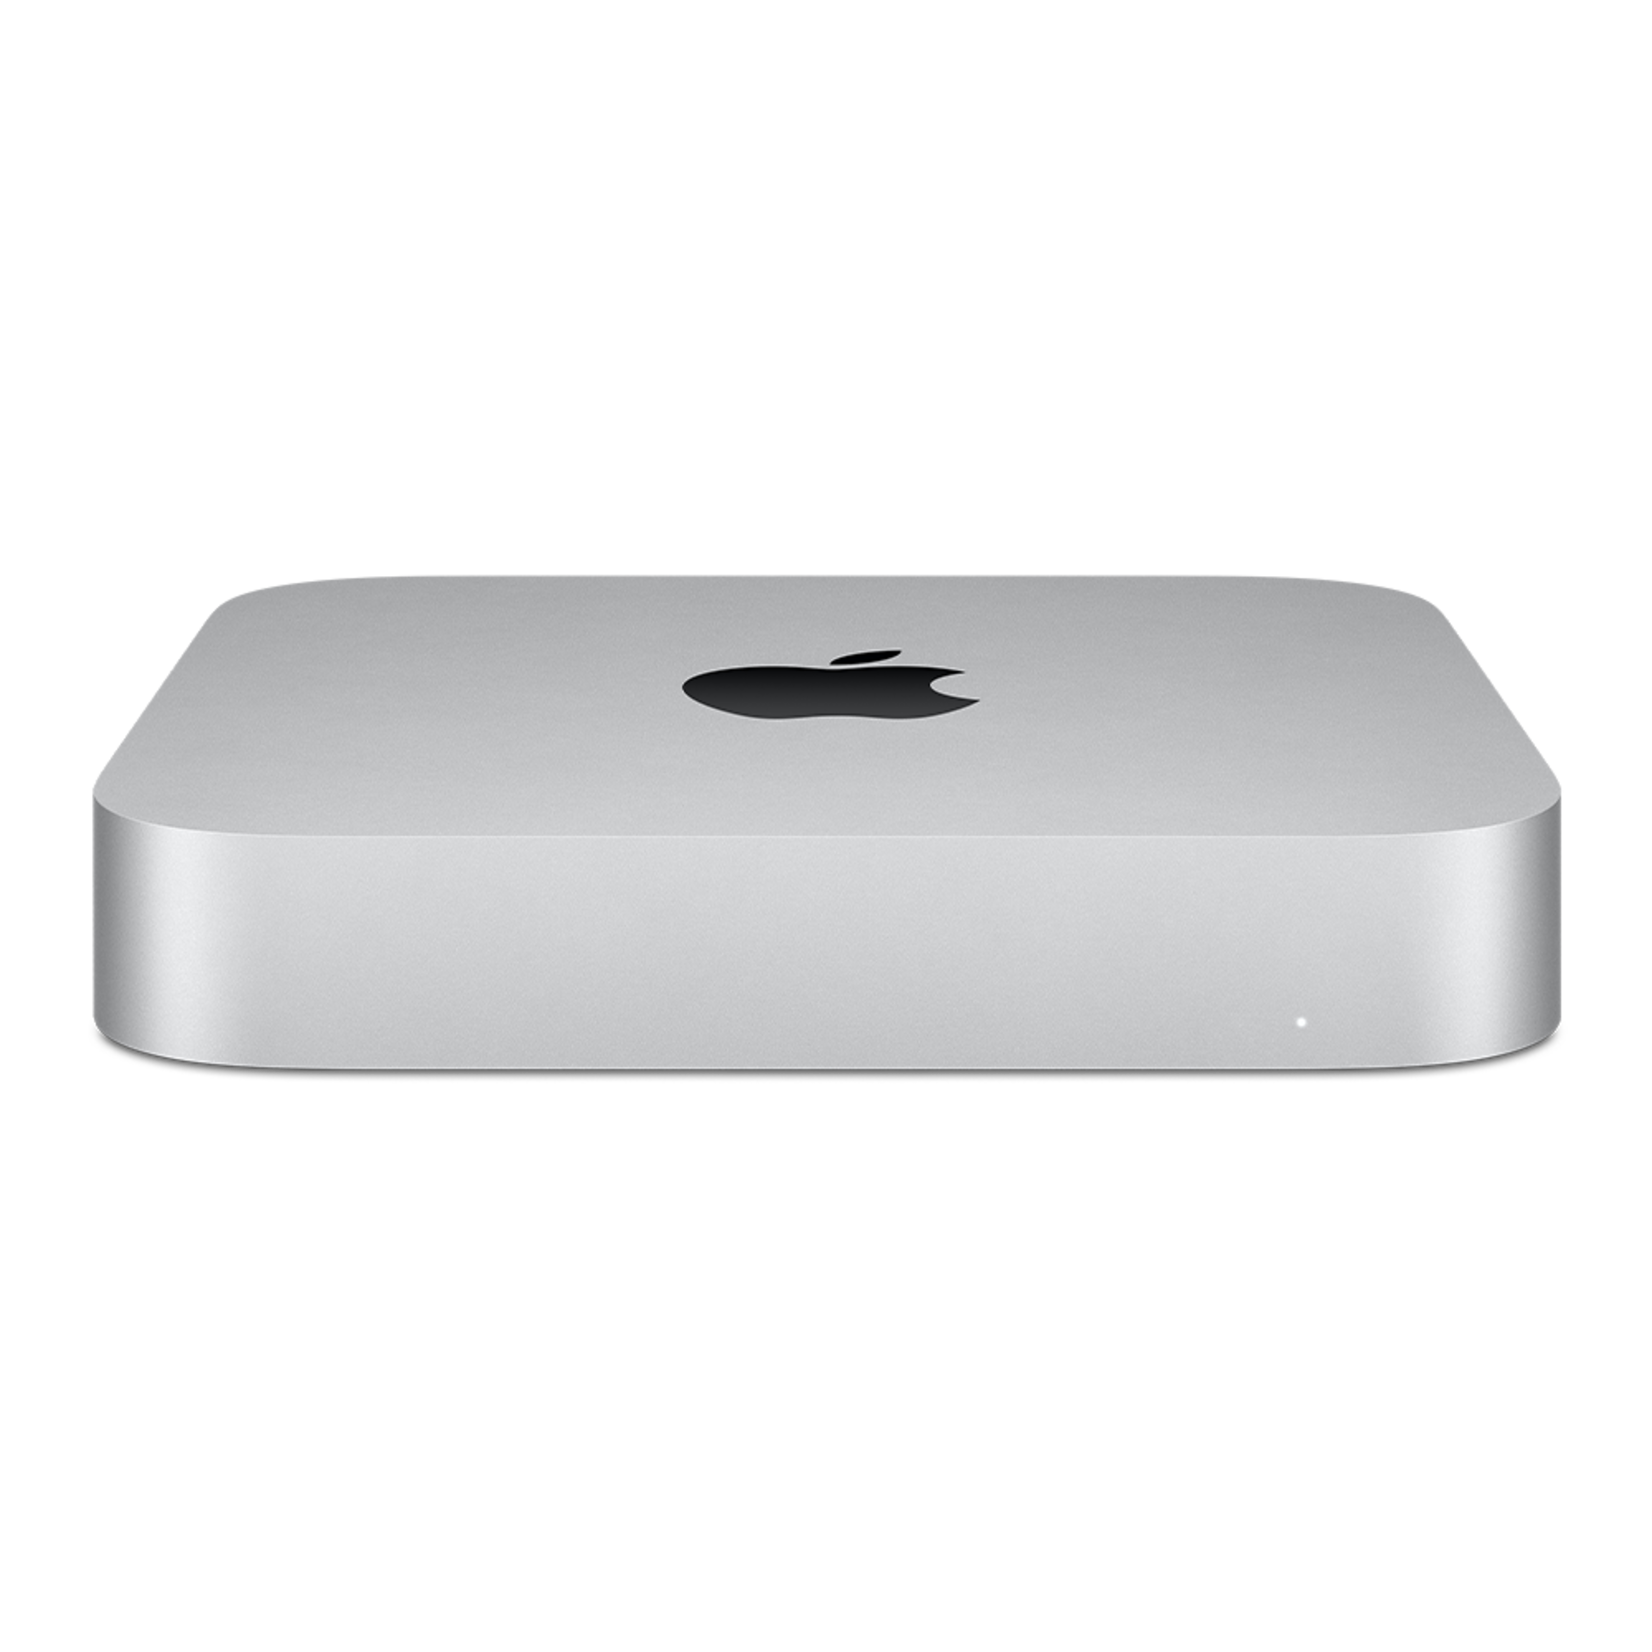 Apple Mac Mini : M2 chip, 8‑core CPU, 10‑core GPU, 8GB, 256GB SSD